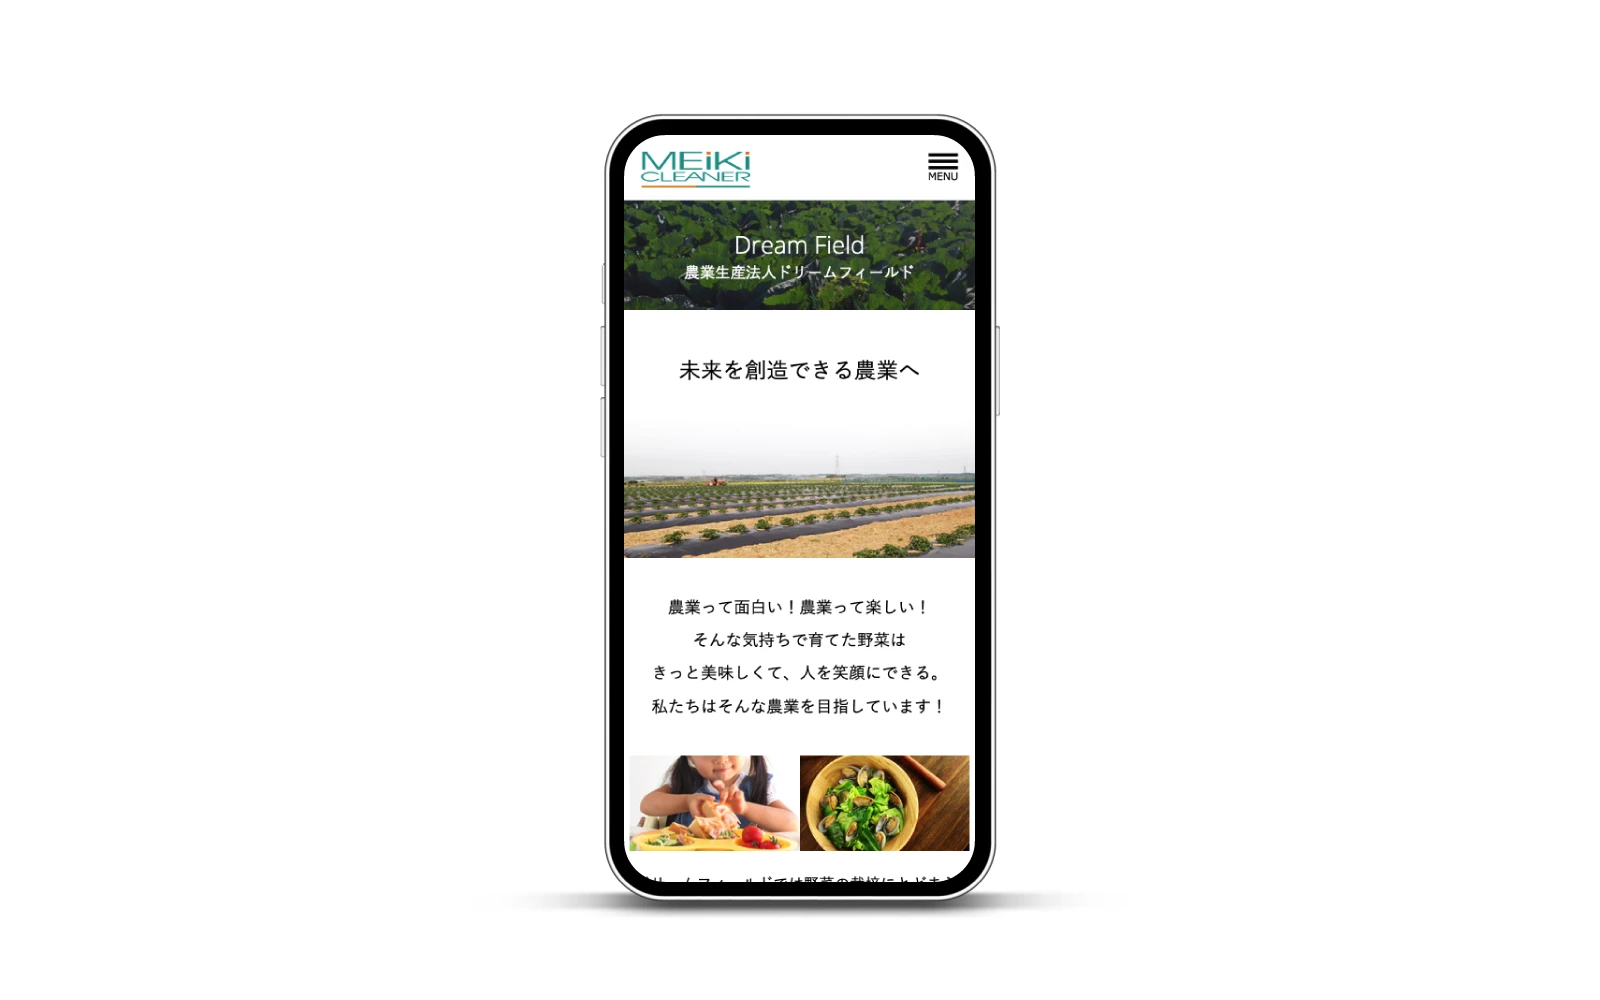 株式会社明輝クリーナー / コーポレートサイト・採用サイト